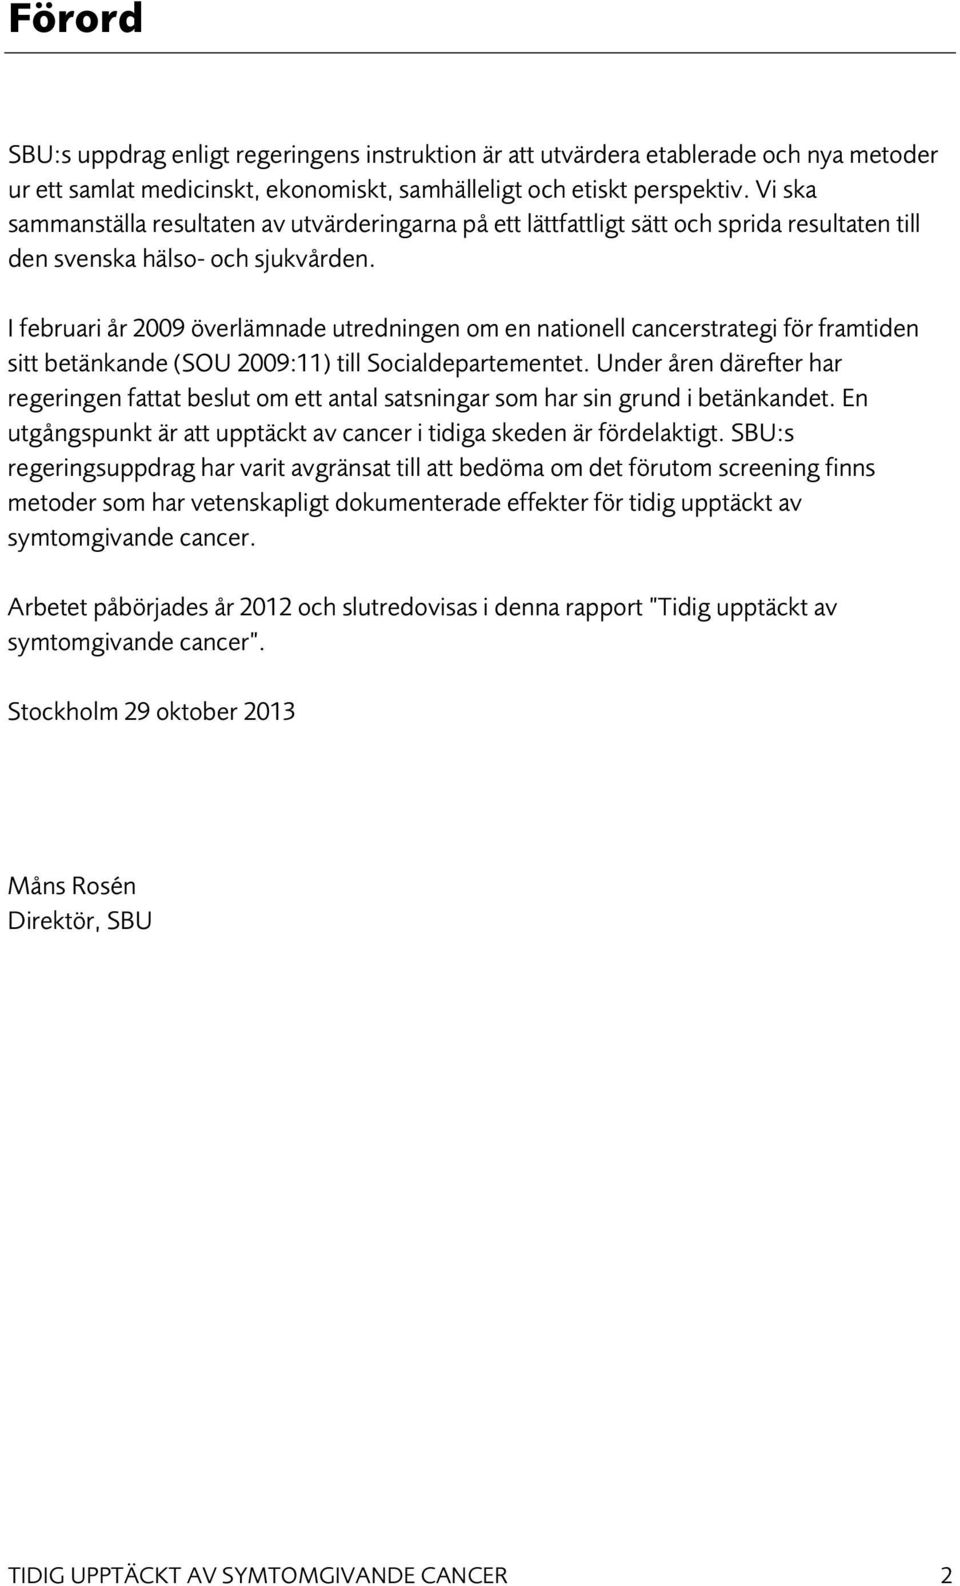 I februari år 2009 överlämnade utredningen om en nationell cancerstrategi för framtiden sitt betänkande (SOU 2009:11) till Socialdepartementet.